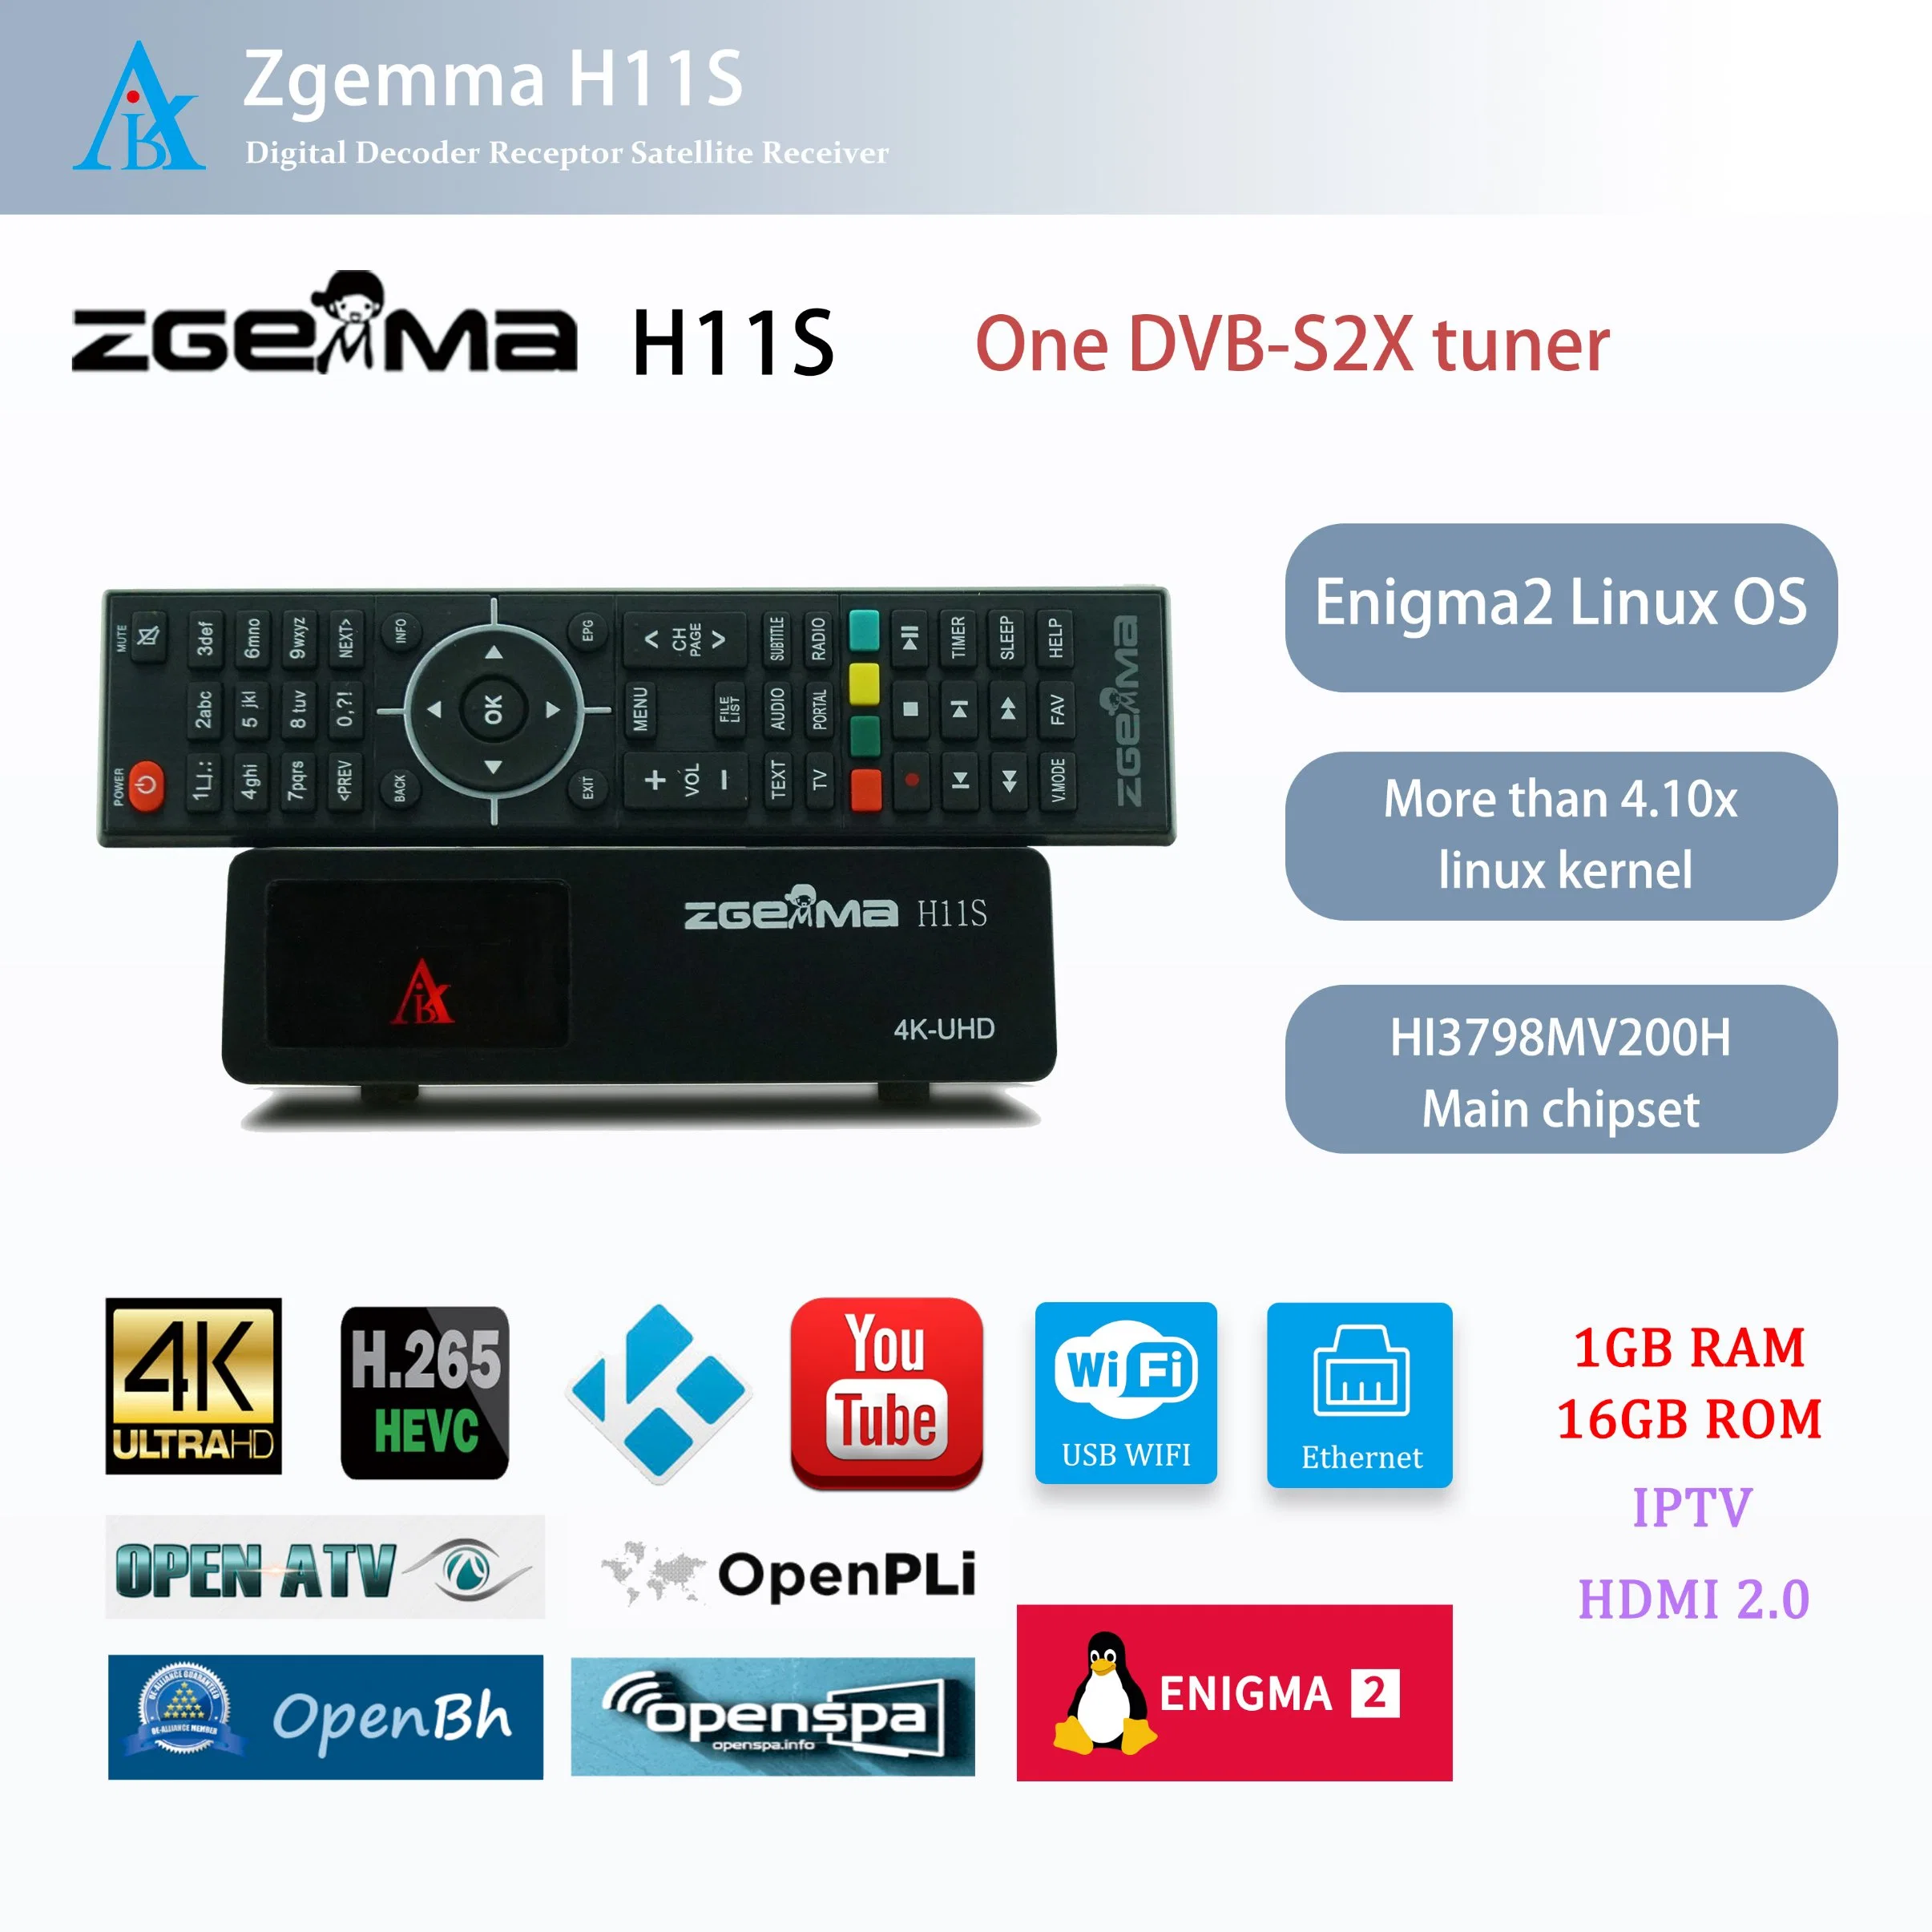 Receptores de Satélite Zgemma H11s de Ponta - Sistema Operacional Enigma2 Linux, Um Sintonizador DVB-S2X, Decodificador de TV.